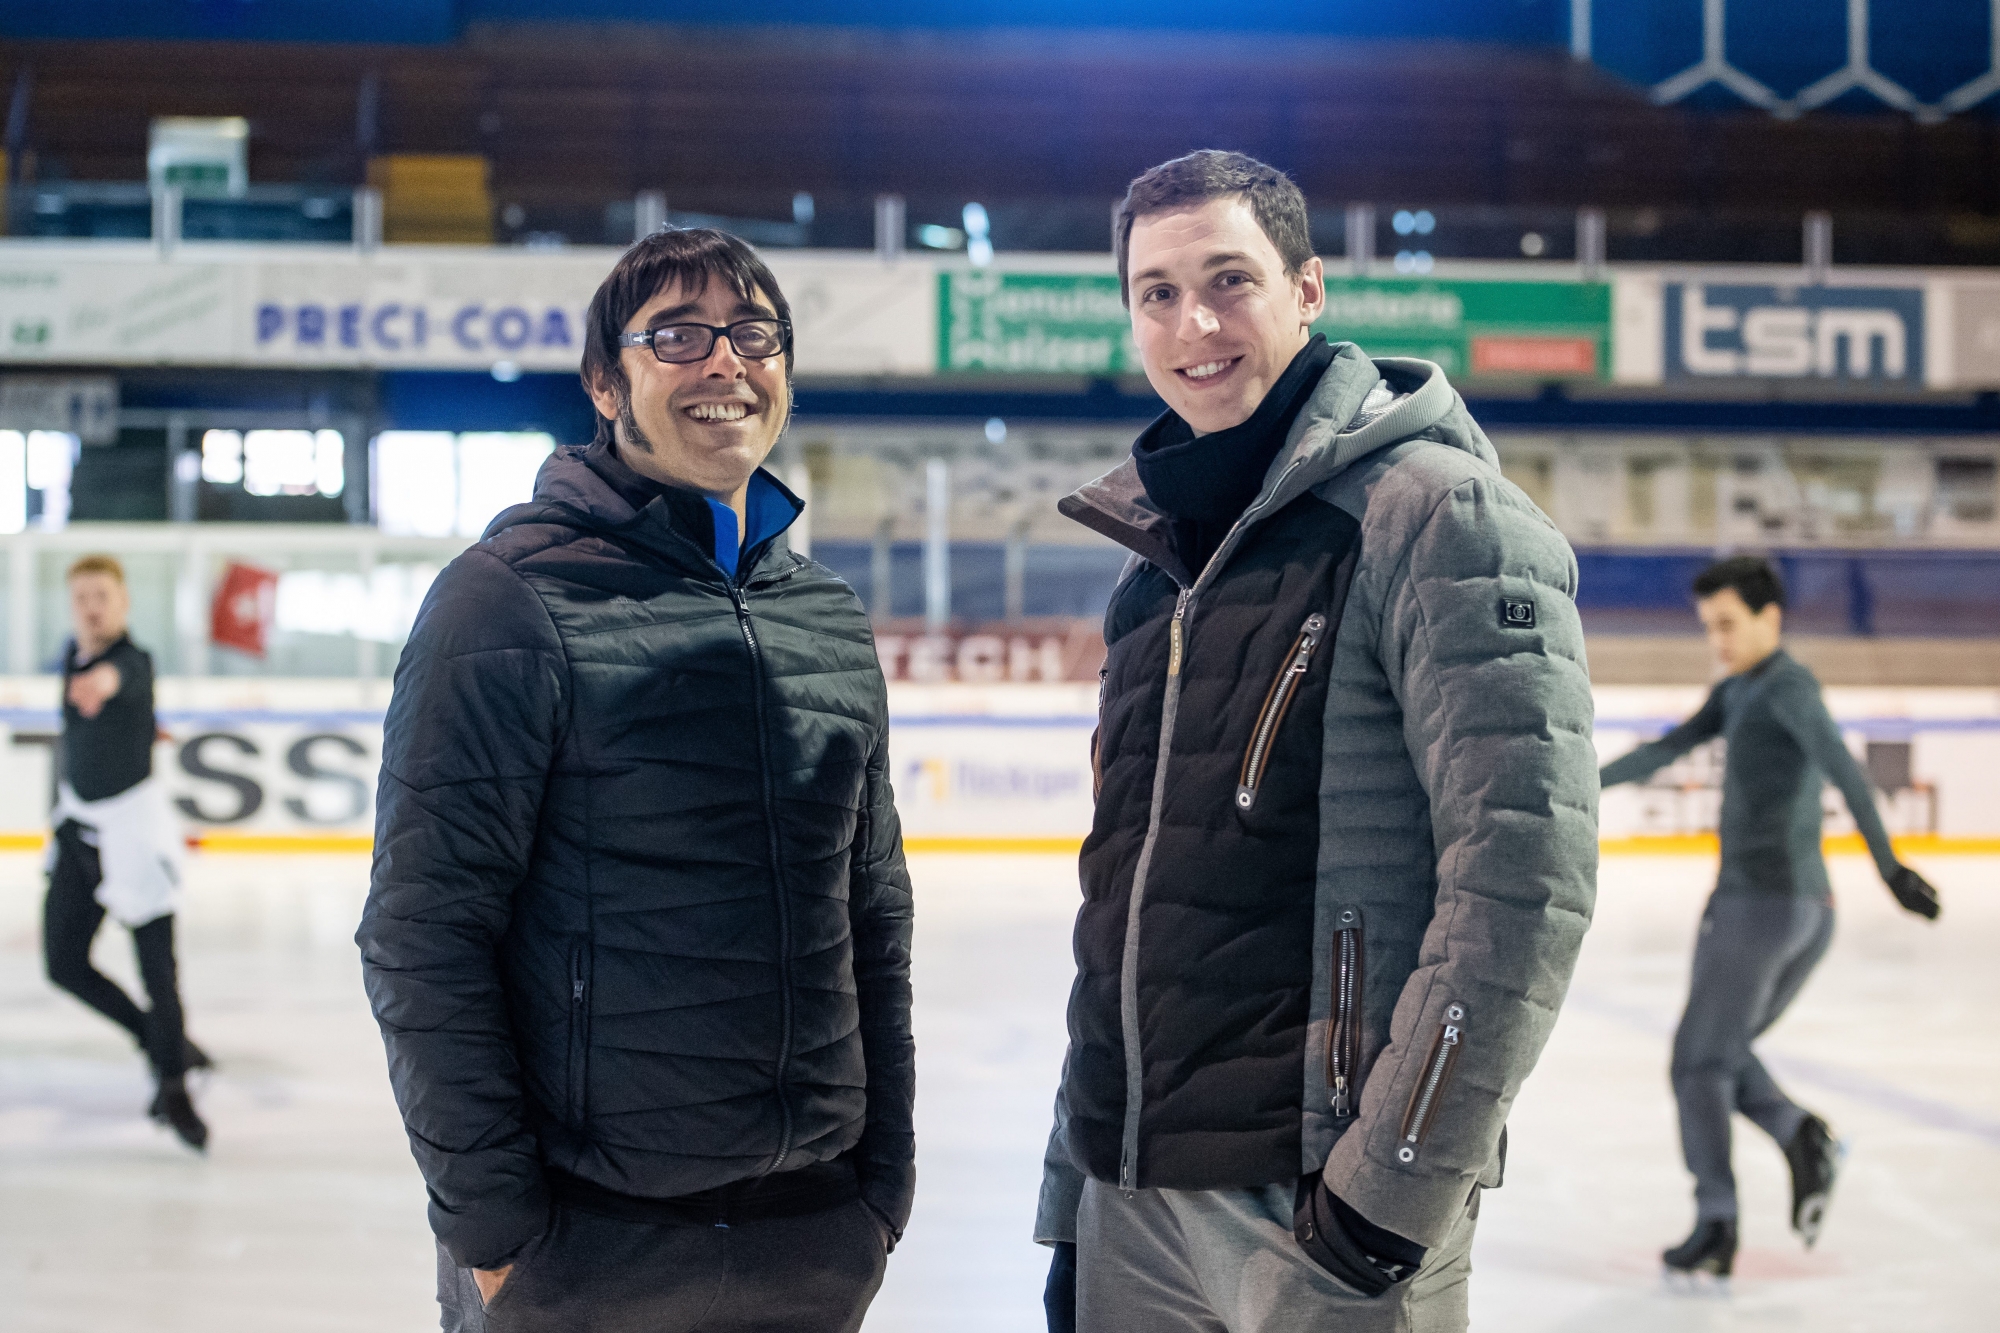 Reportage pendant un cours de Jean-Francois Ballester, a gauche, et Bruno Massot, a droite, professeurs du club de patinage artistique de La Chaux-de-Fonds

La Chaux-de-Fonds, le 15 octobre 2018
Photo : Lucas Vuitel CP LA CHAUX-DE-FONDS